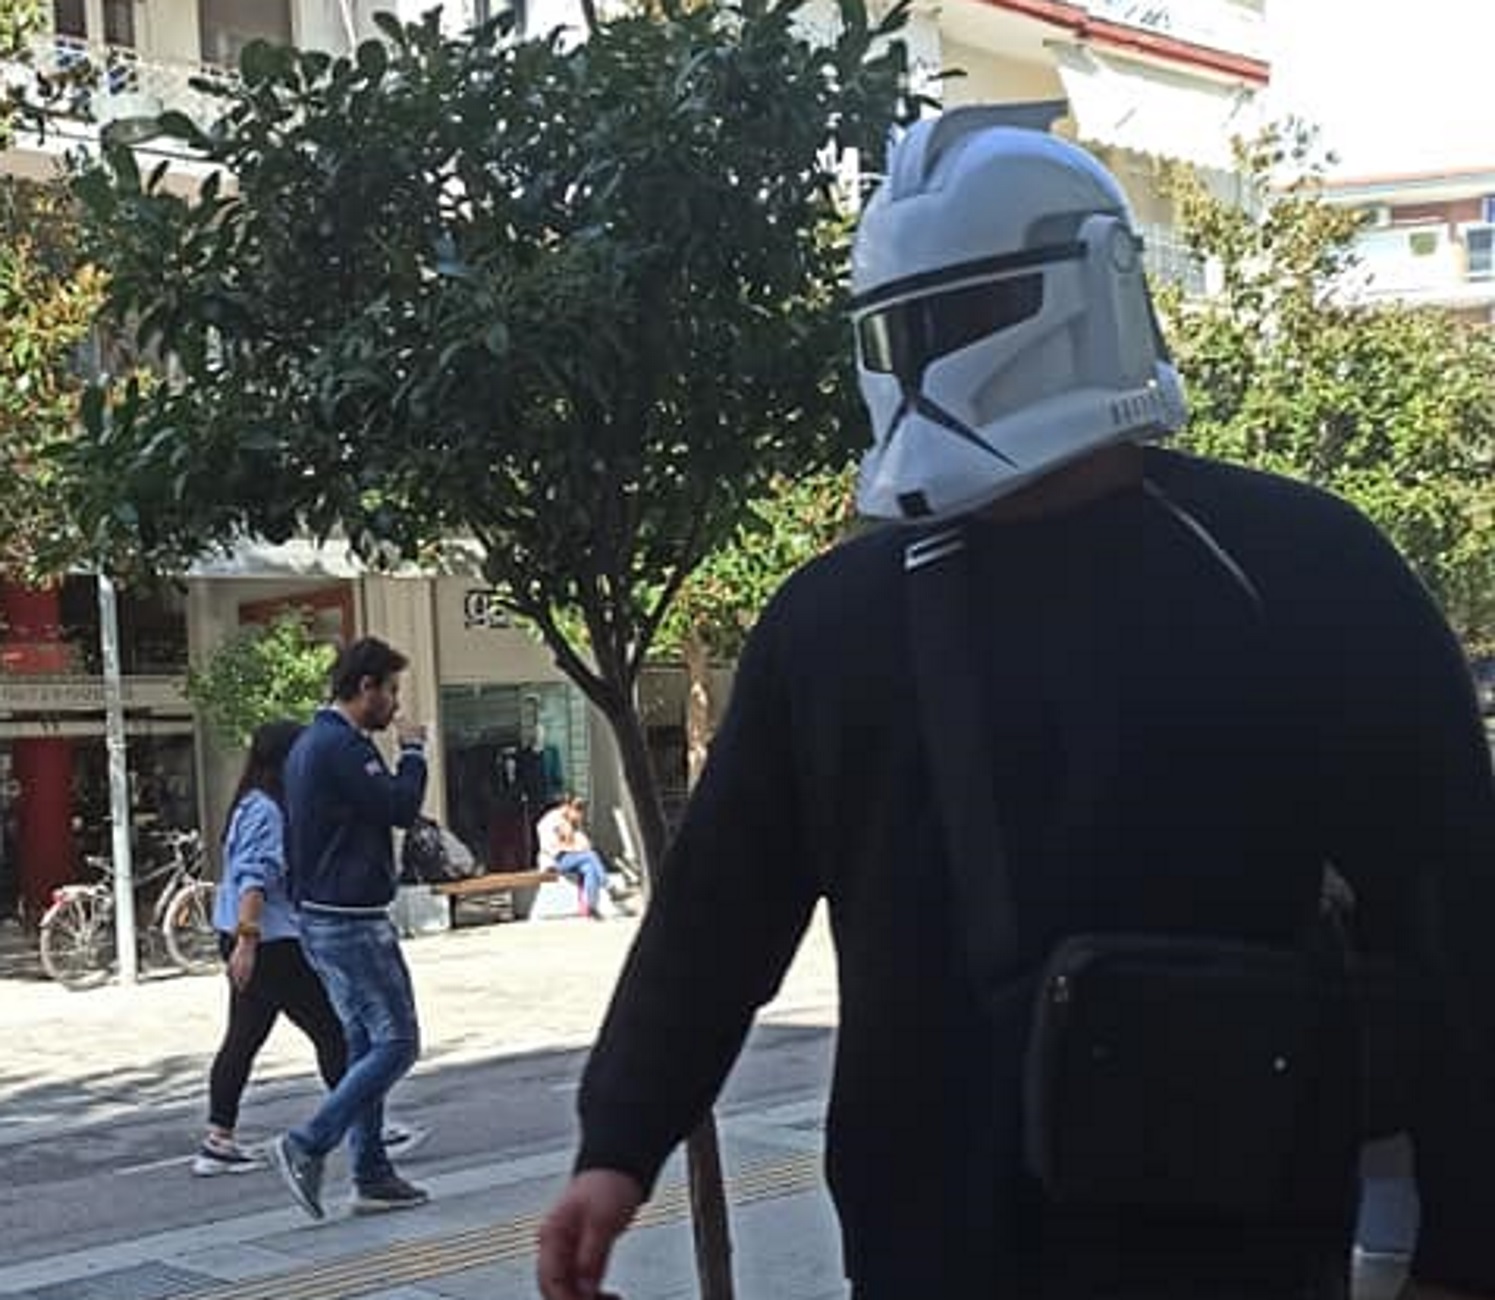 Σέρρες: Με μάσκα… Star Wars βγήκε για περίπατο! Δείτε τις εικόνες που κάνουν θραύση στο Facebook